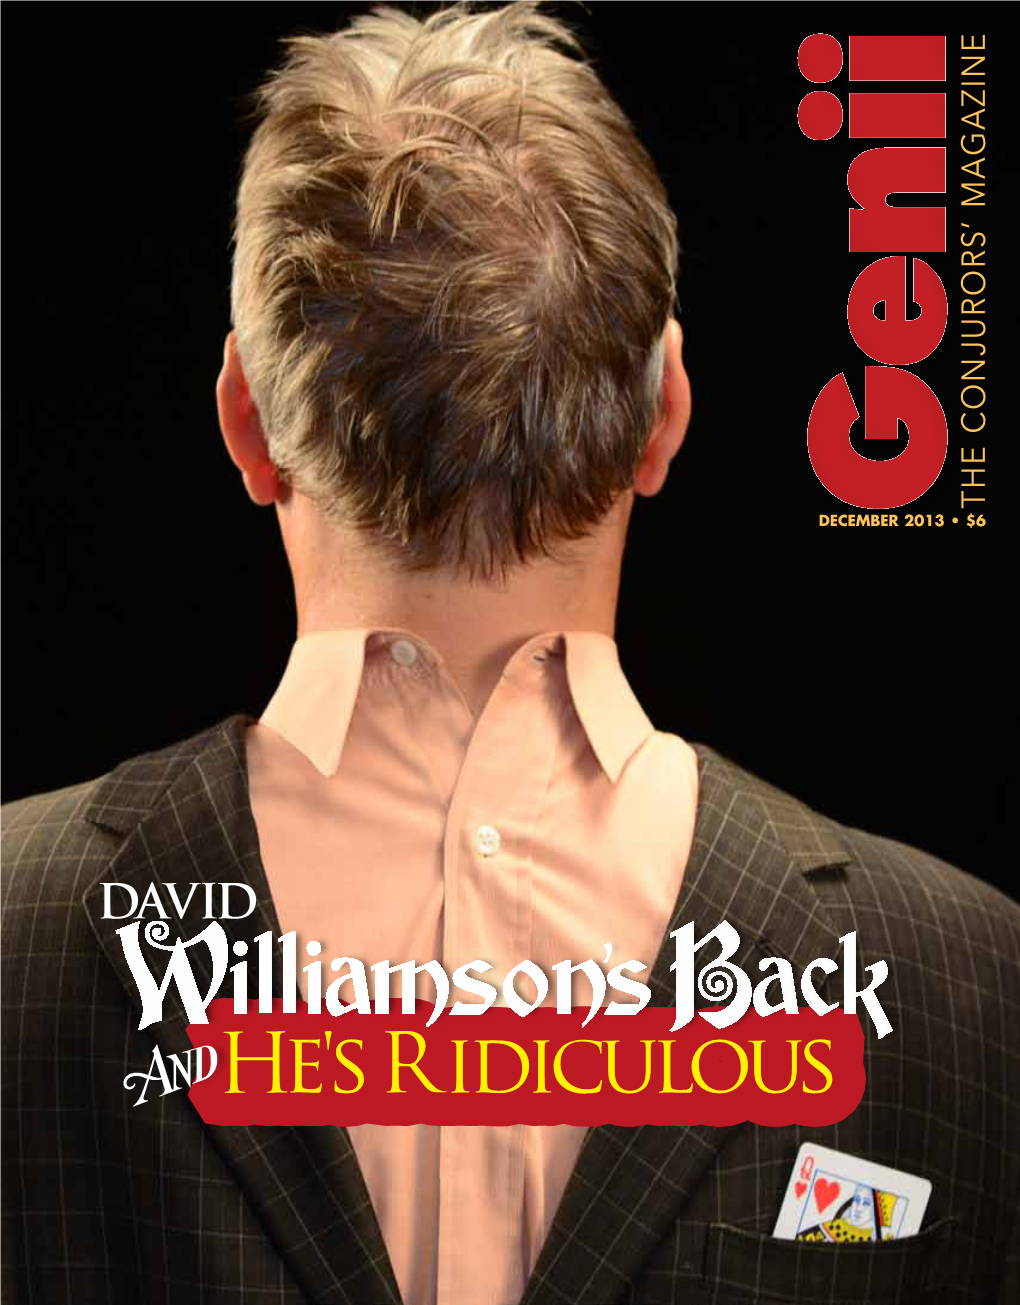 Back Williamson's